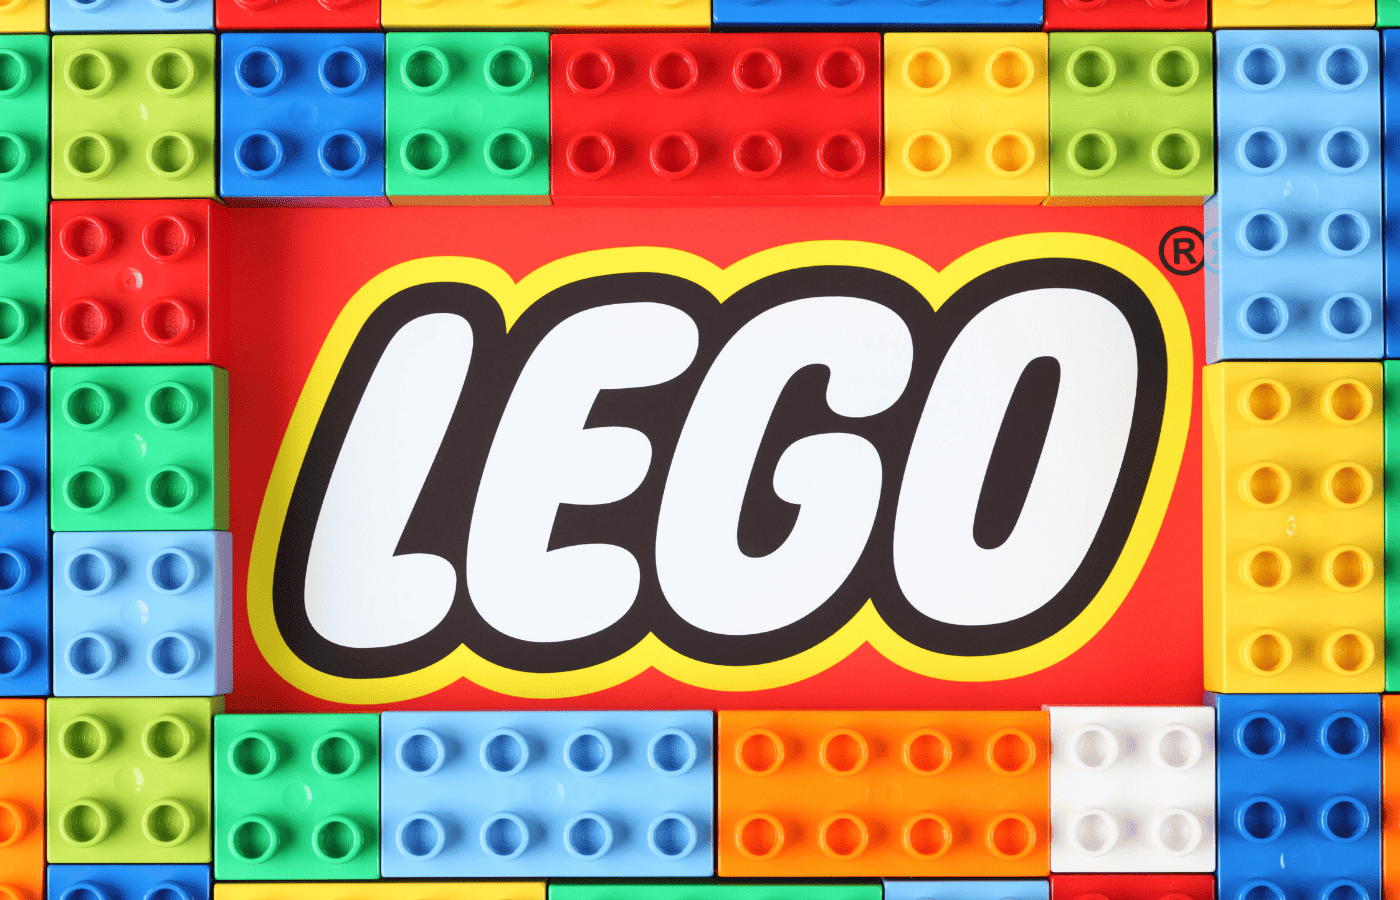 Do Lego Sets Come With Extra Pieces